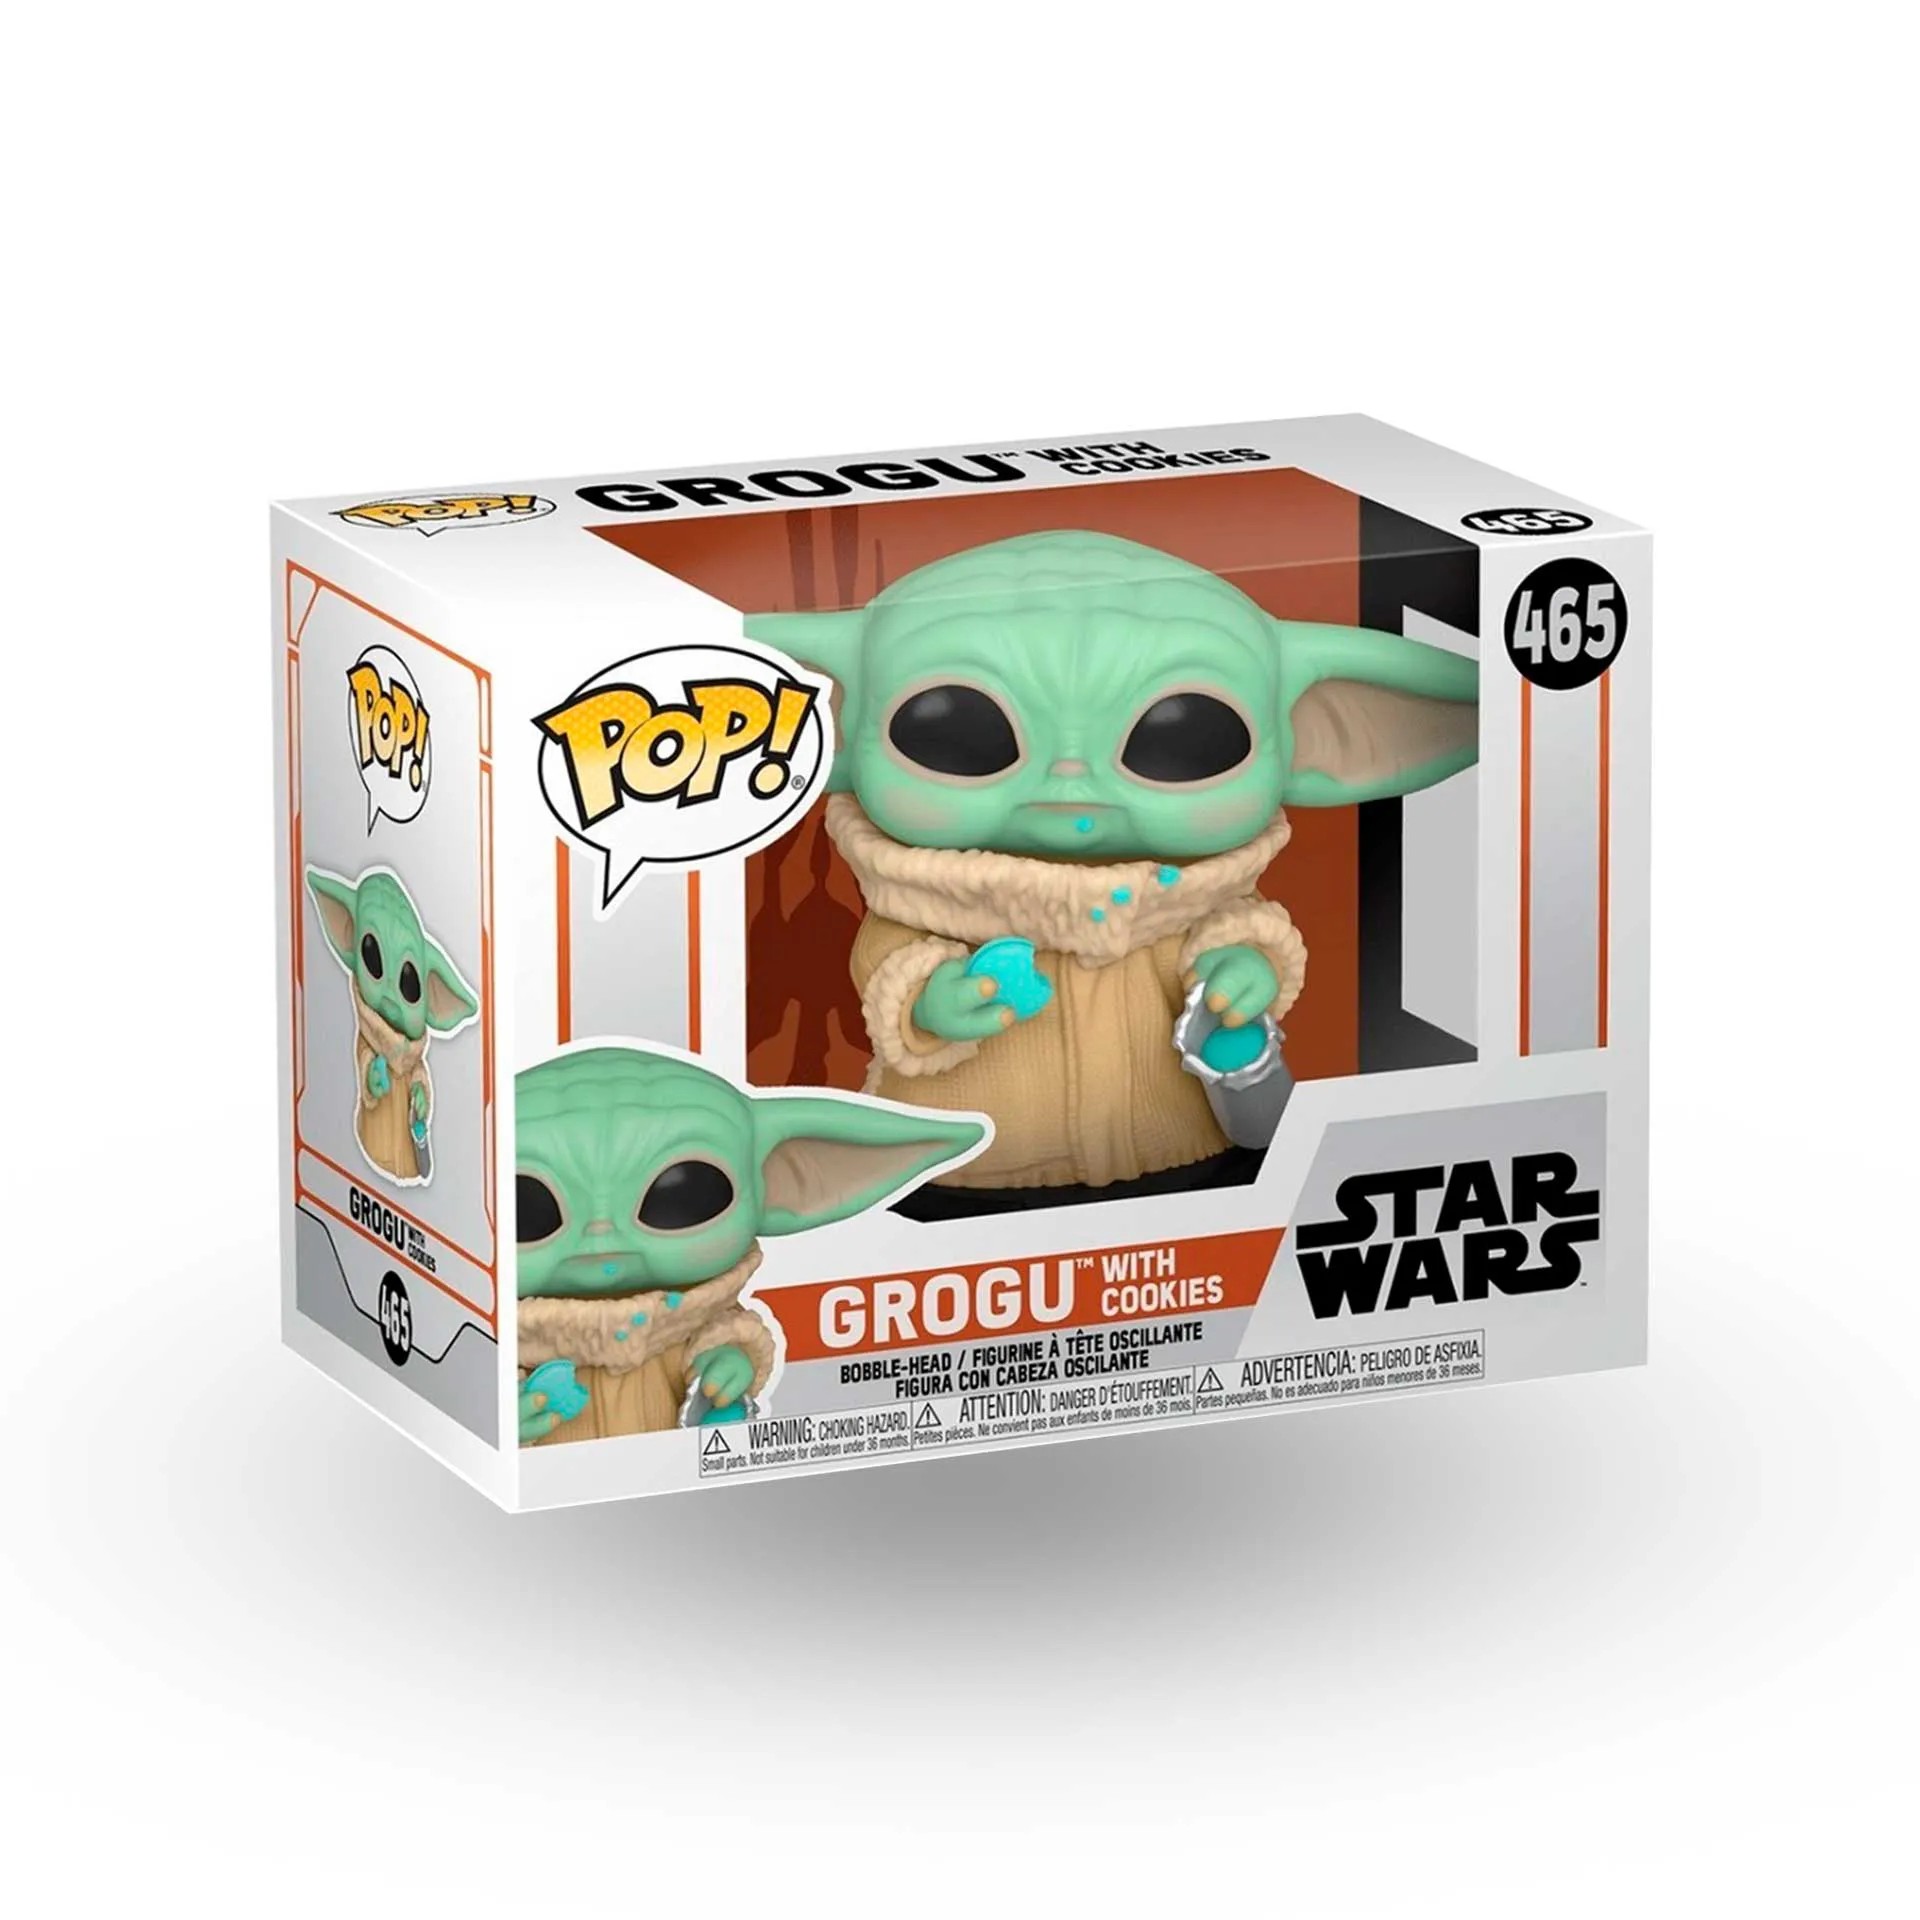 Фигурка Funko Pop! Star Wars: The Mandalorian - Grogu with Cookies игрушка мастер йода грогу йода30 см